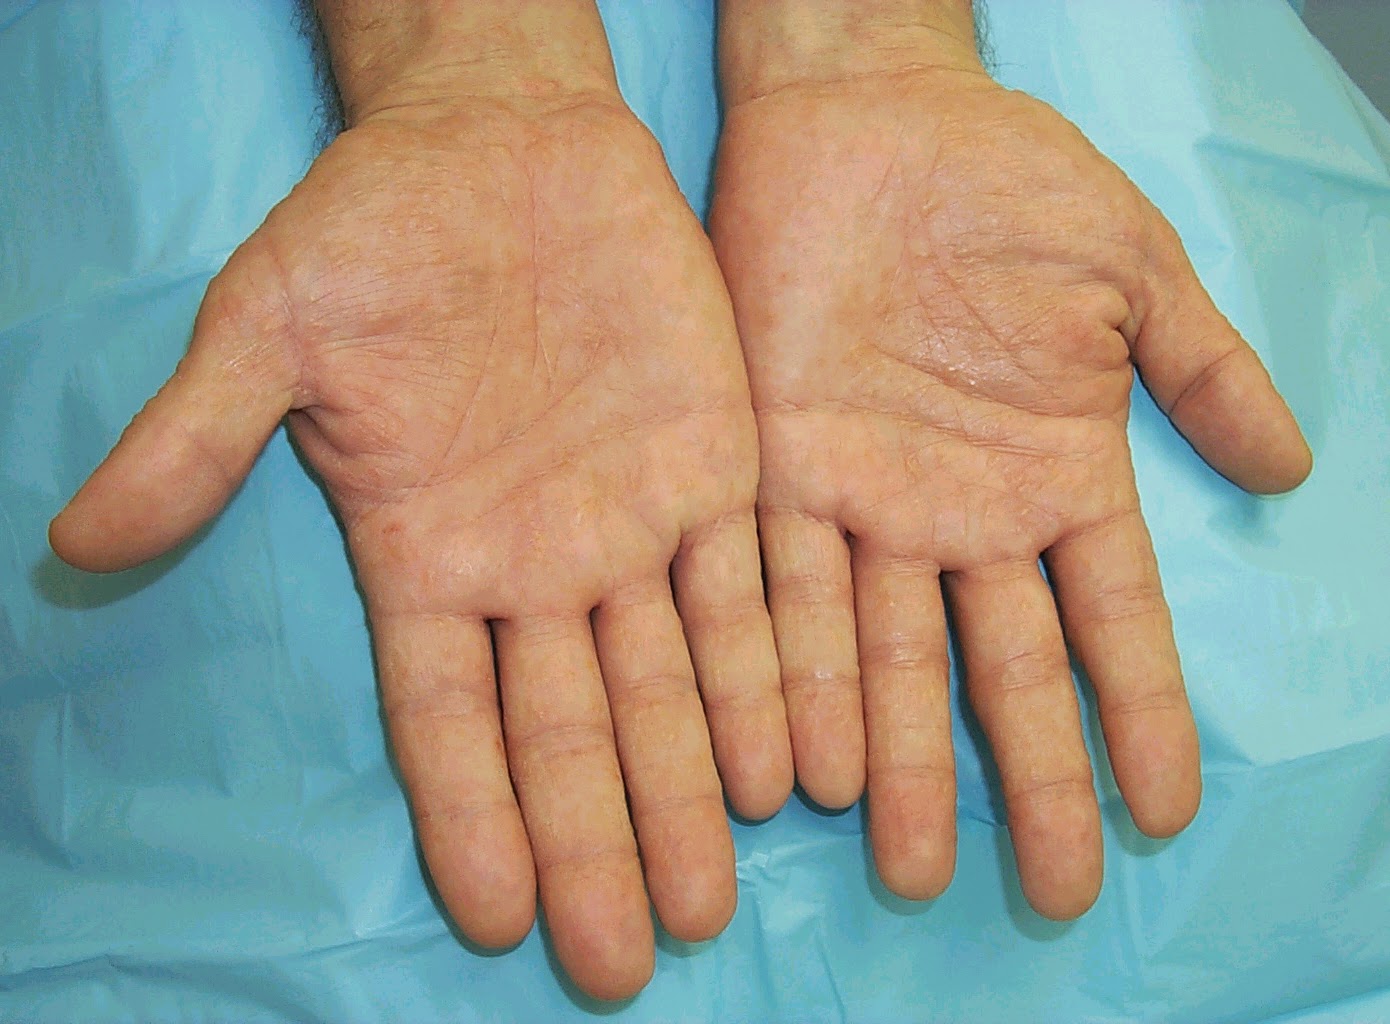 Skin Disease Types Vesicular Hand Dermatitis Skin Disease Type